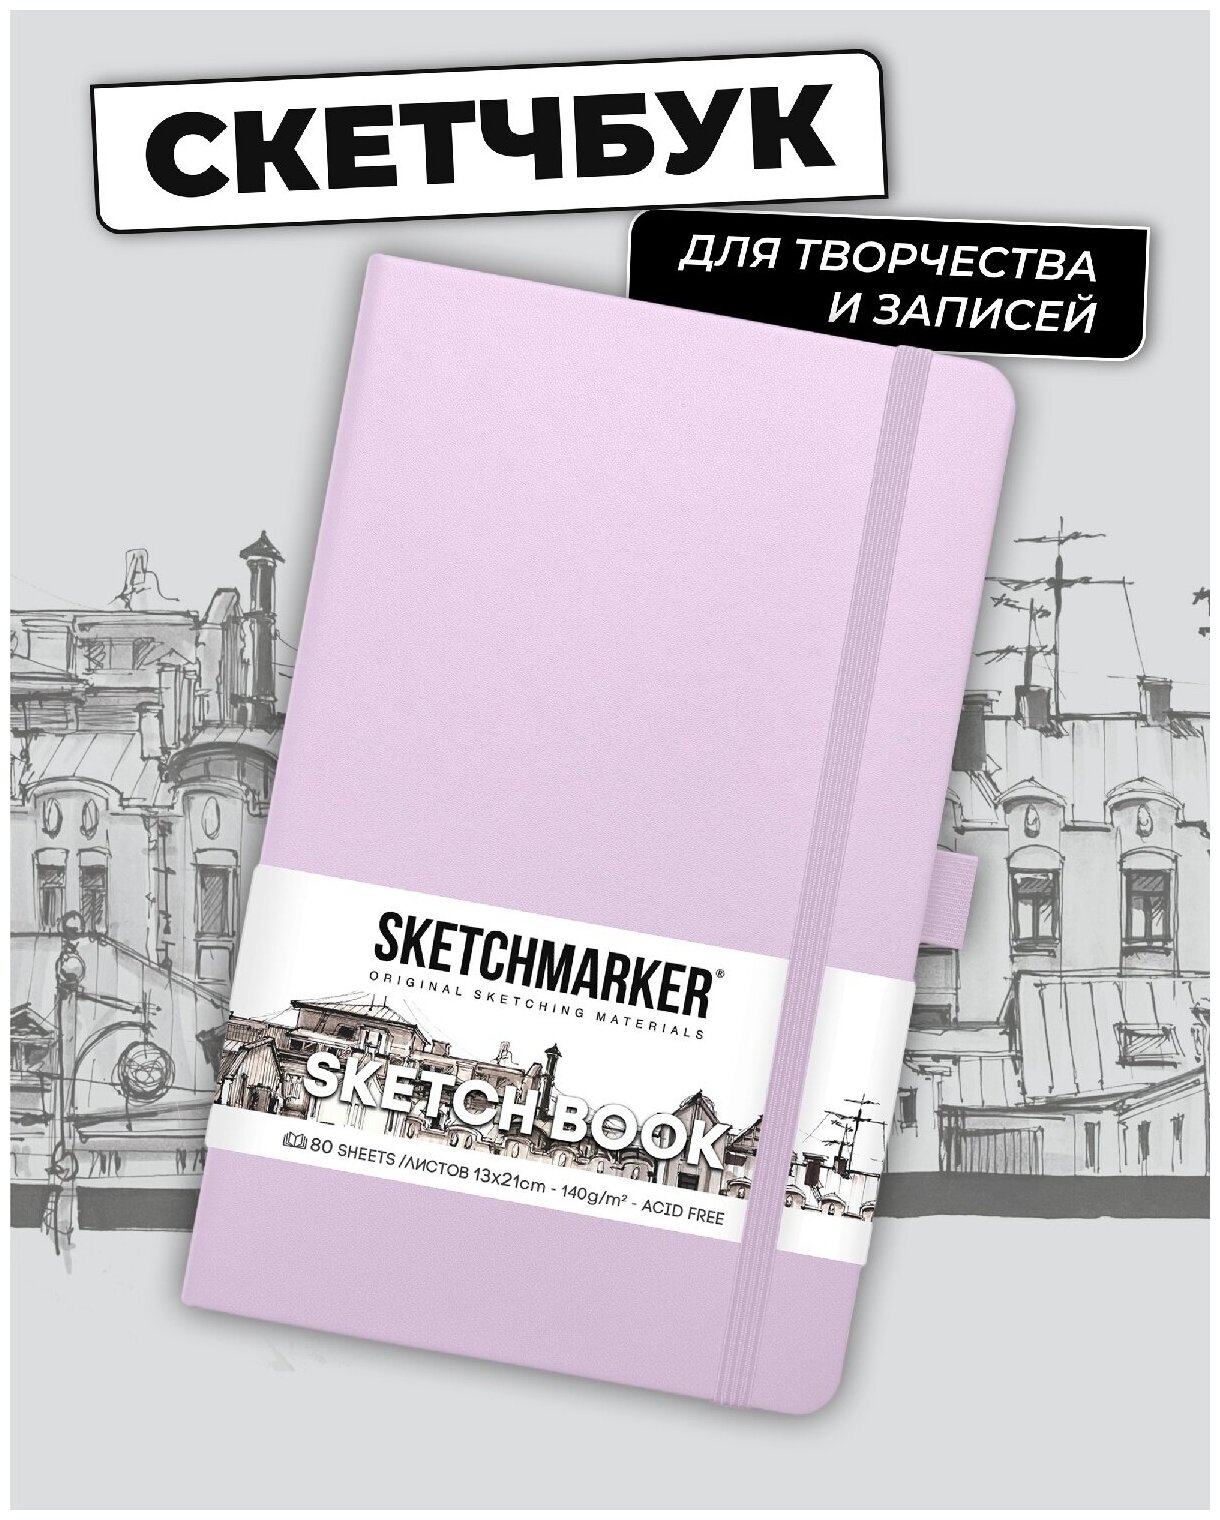 Скетчбук для рисования и скетчинга SKETCHMARKER 140г/м2 13х21см. 160 страниц цвета слоновой кости, твердая обложка, цвет: пастельно-фиолетовый